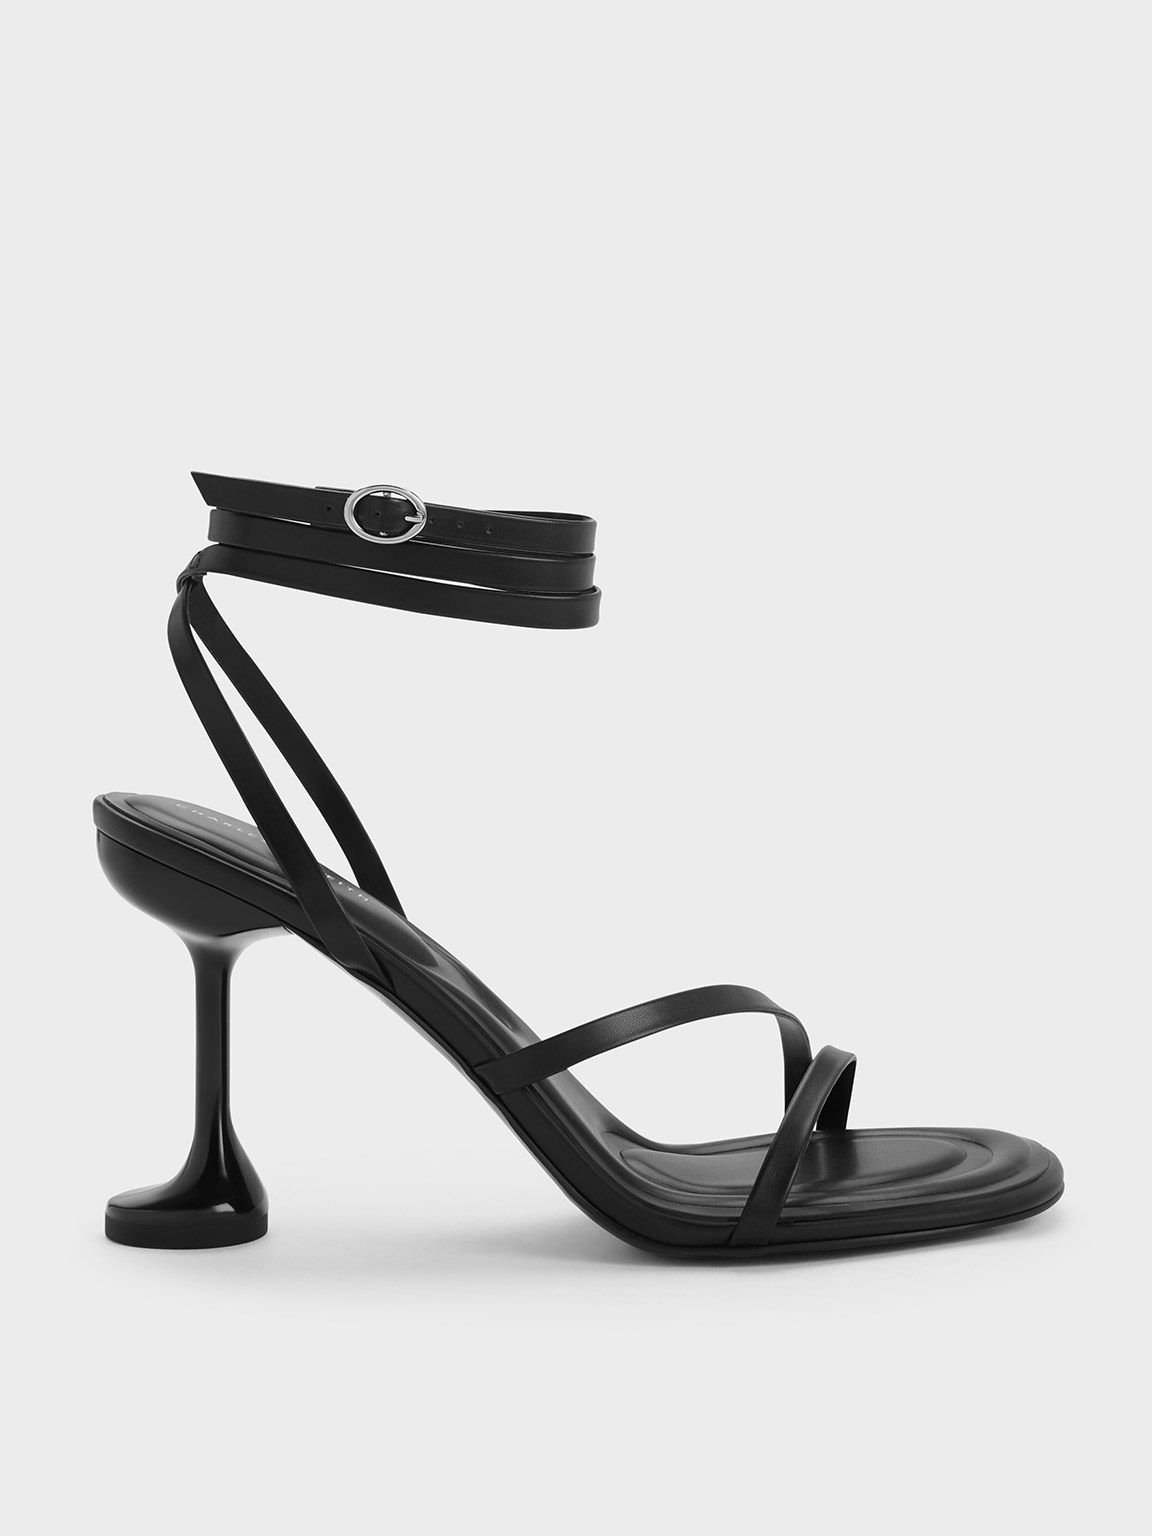 Celestine Sculptural Heel Strappy Sandals